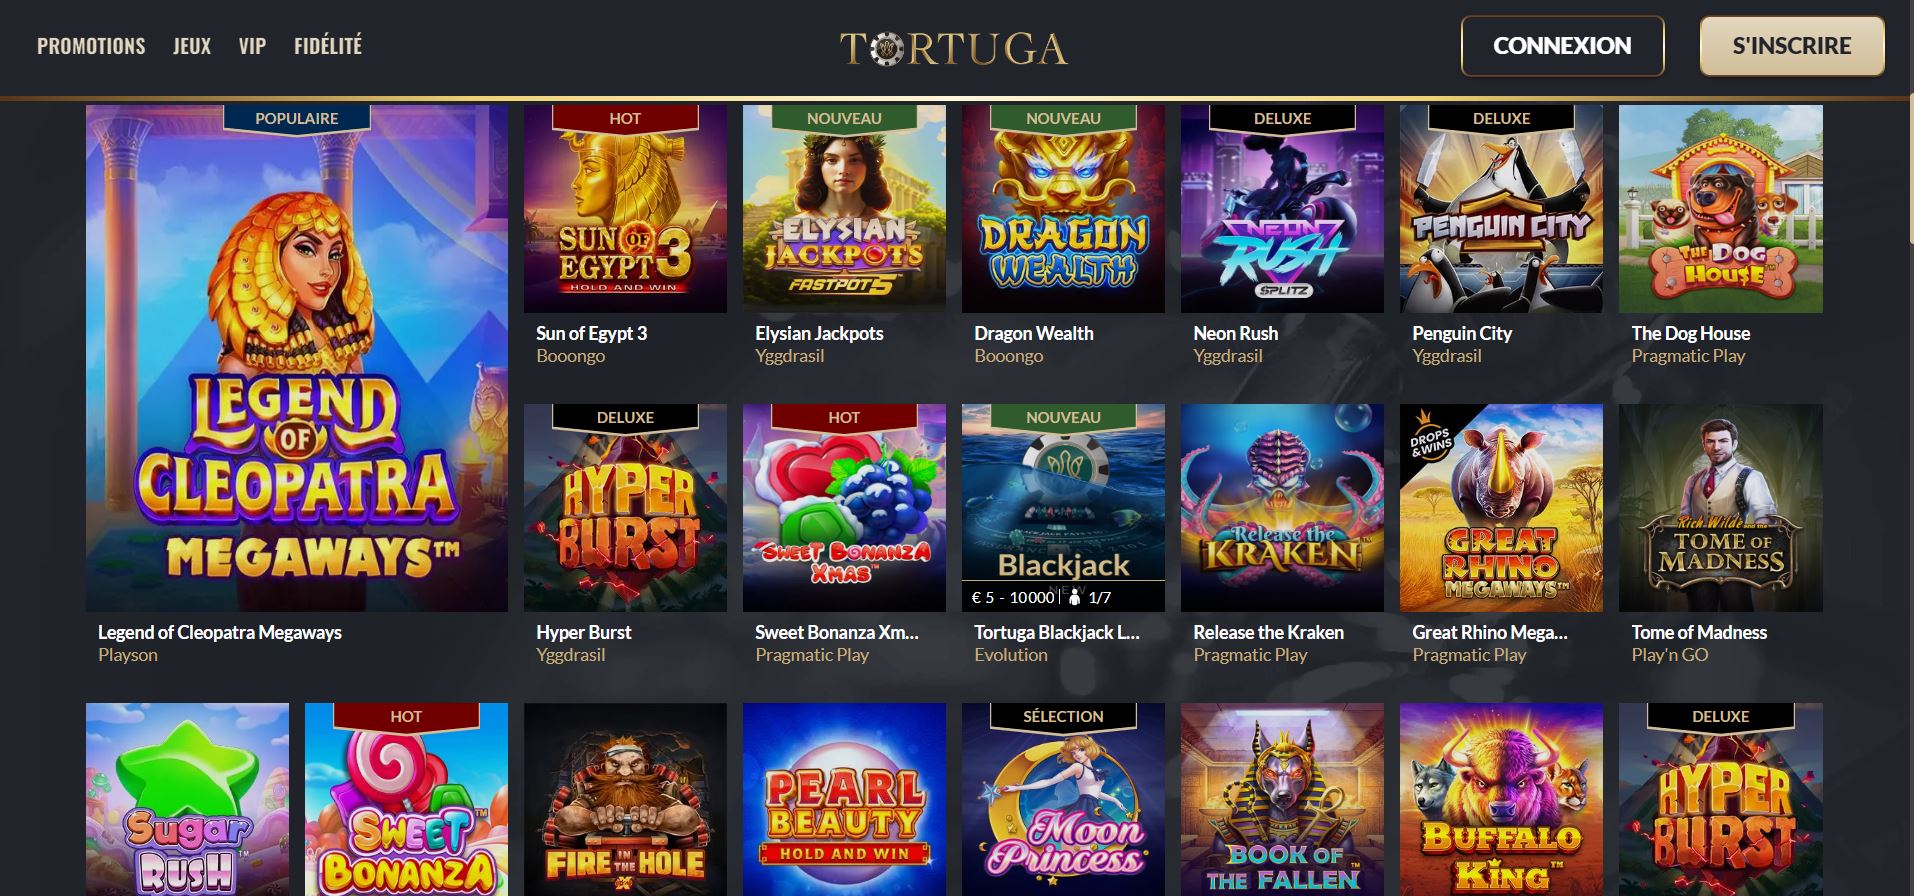 Tortuga - Jeux - Casino en ligne argent réel